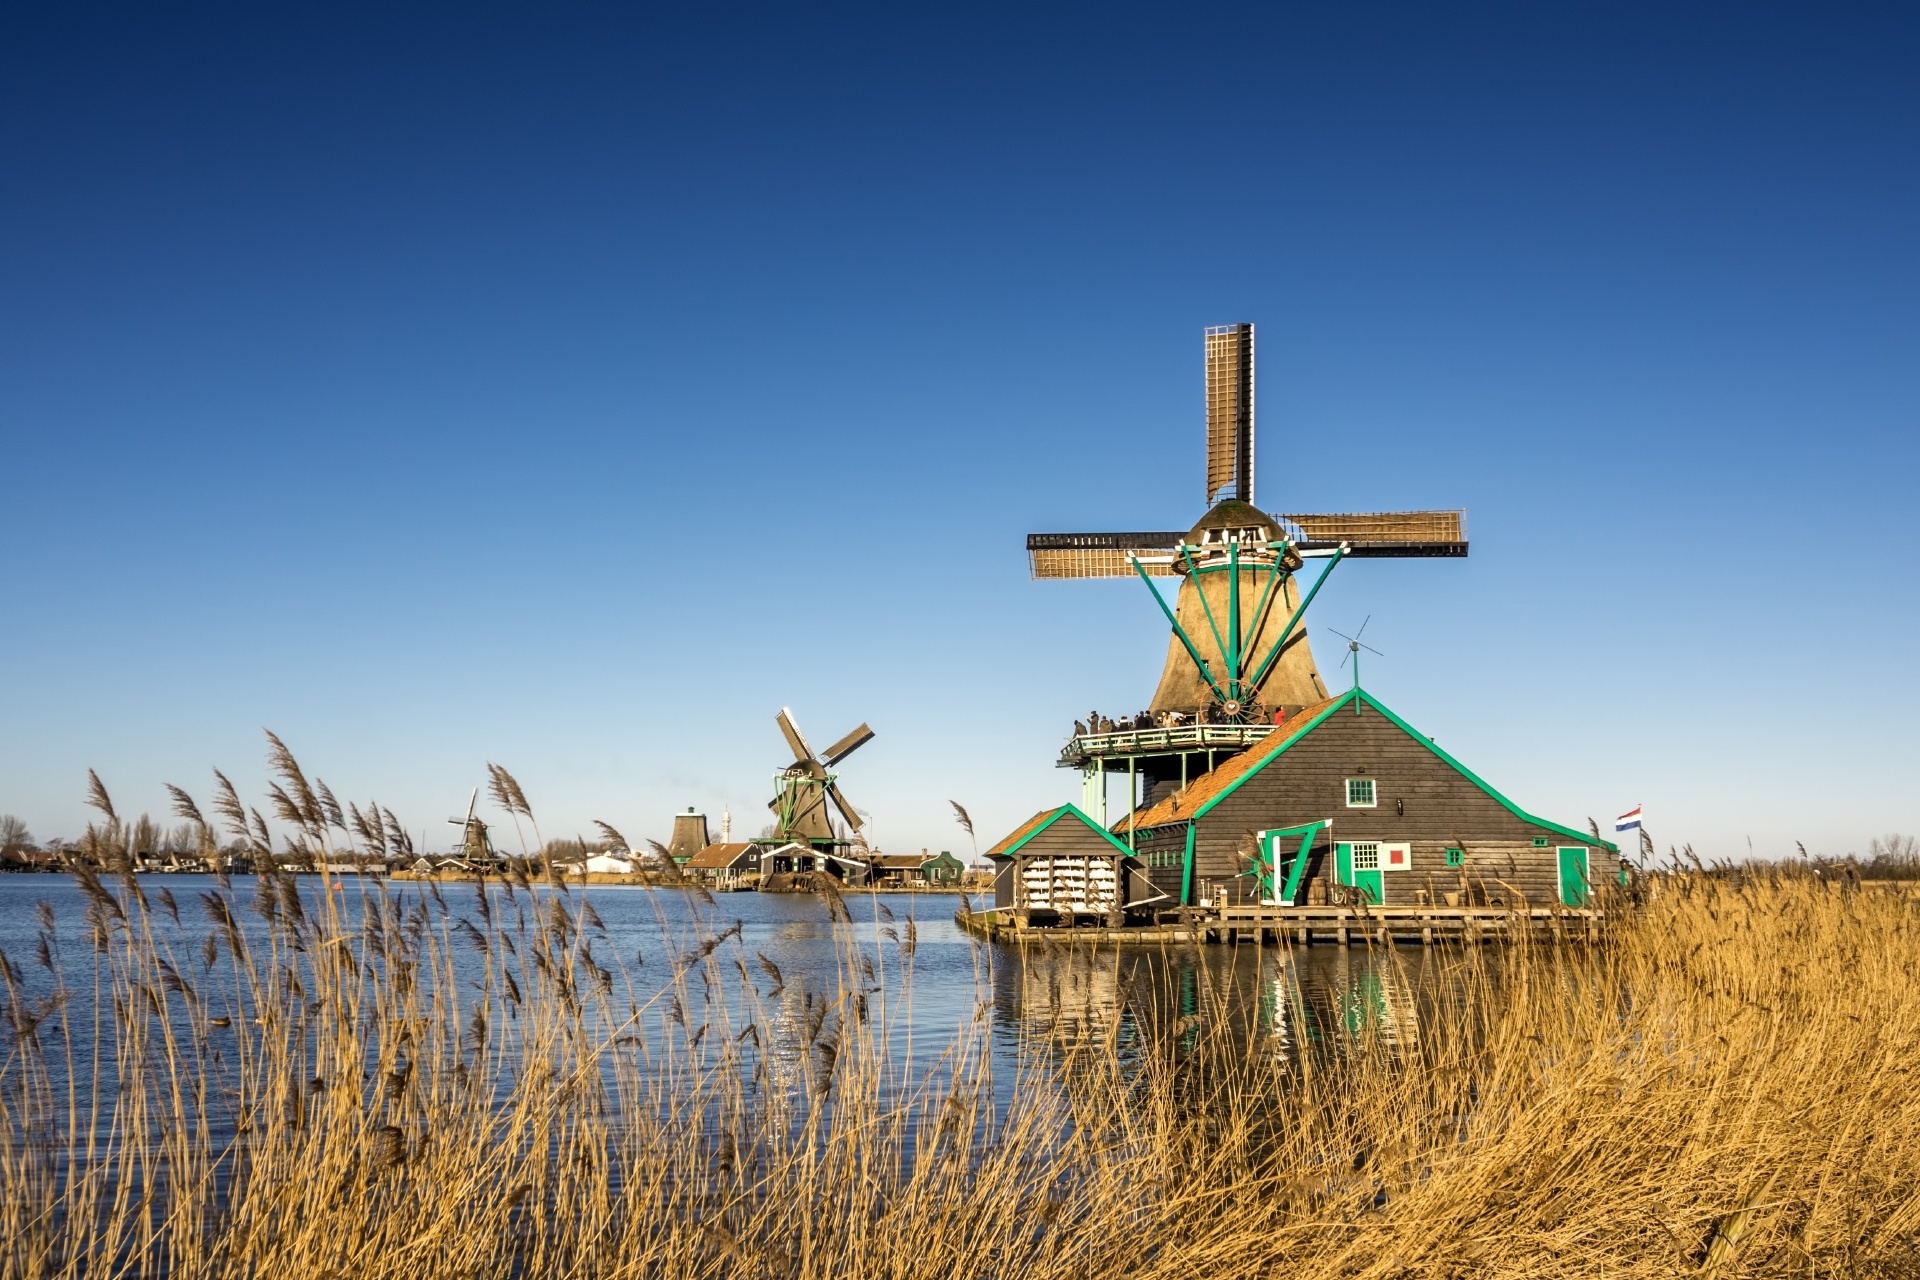 ザーンセ・スカンスの風車のある風景　オランダの風景